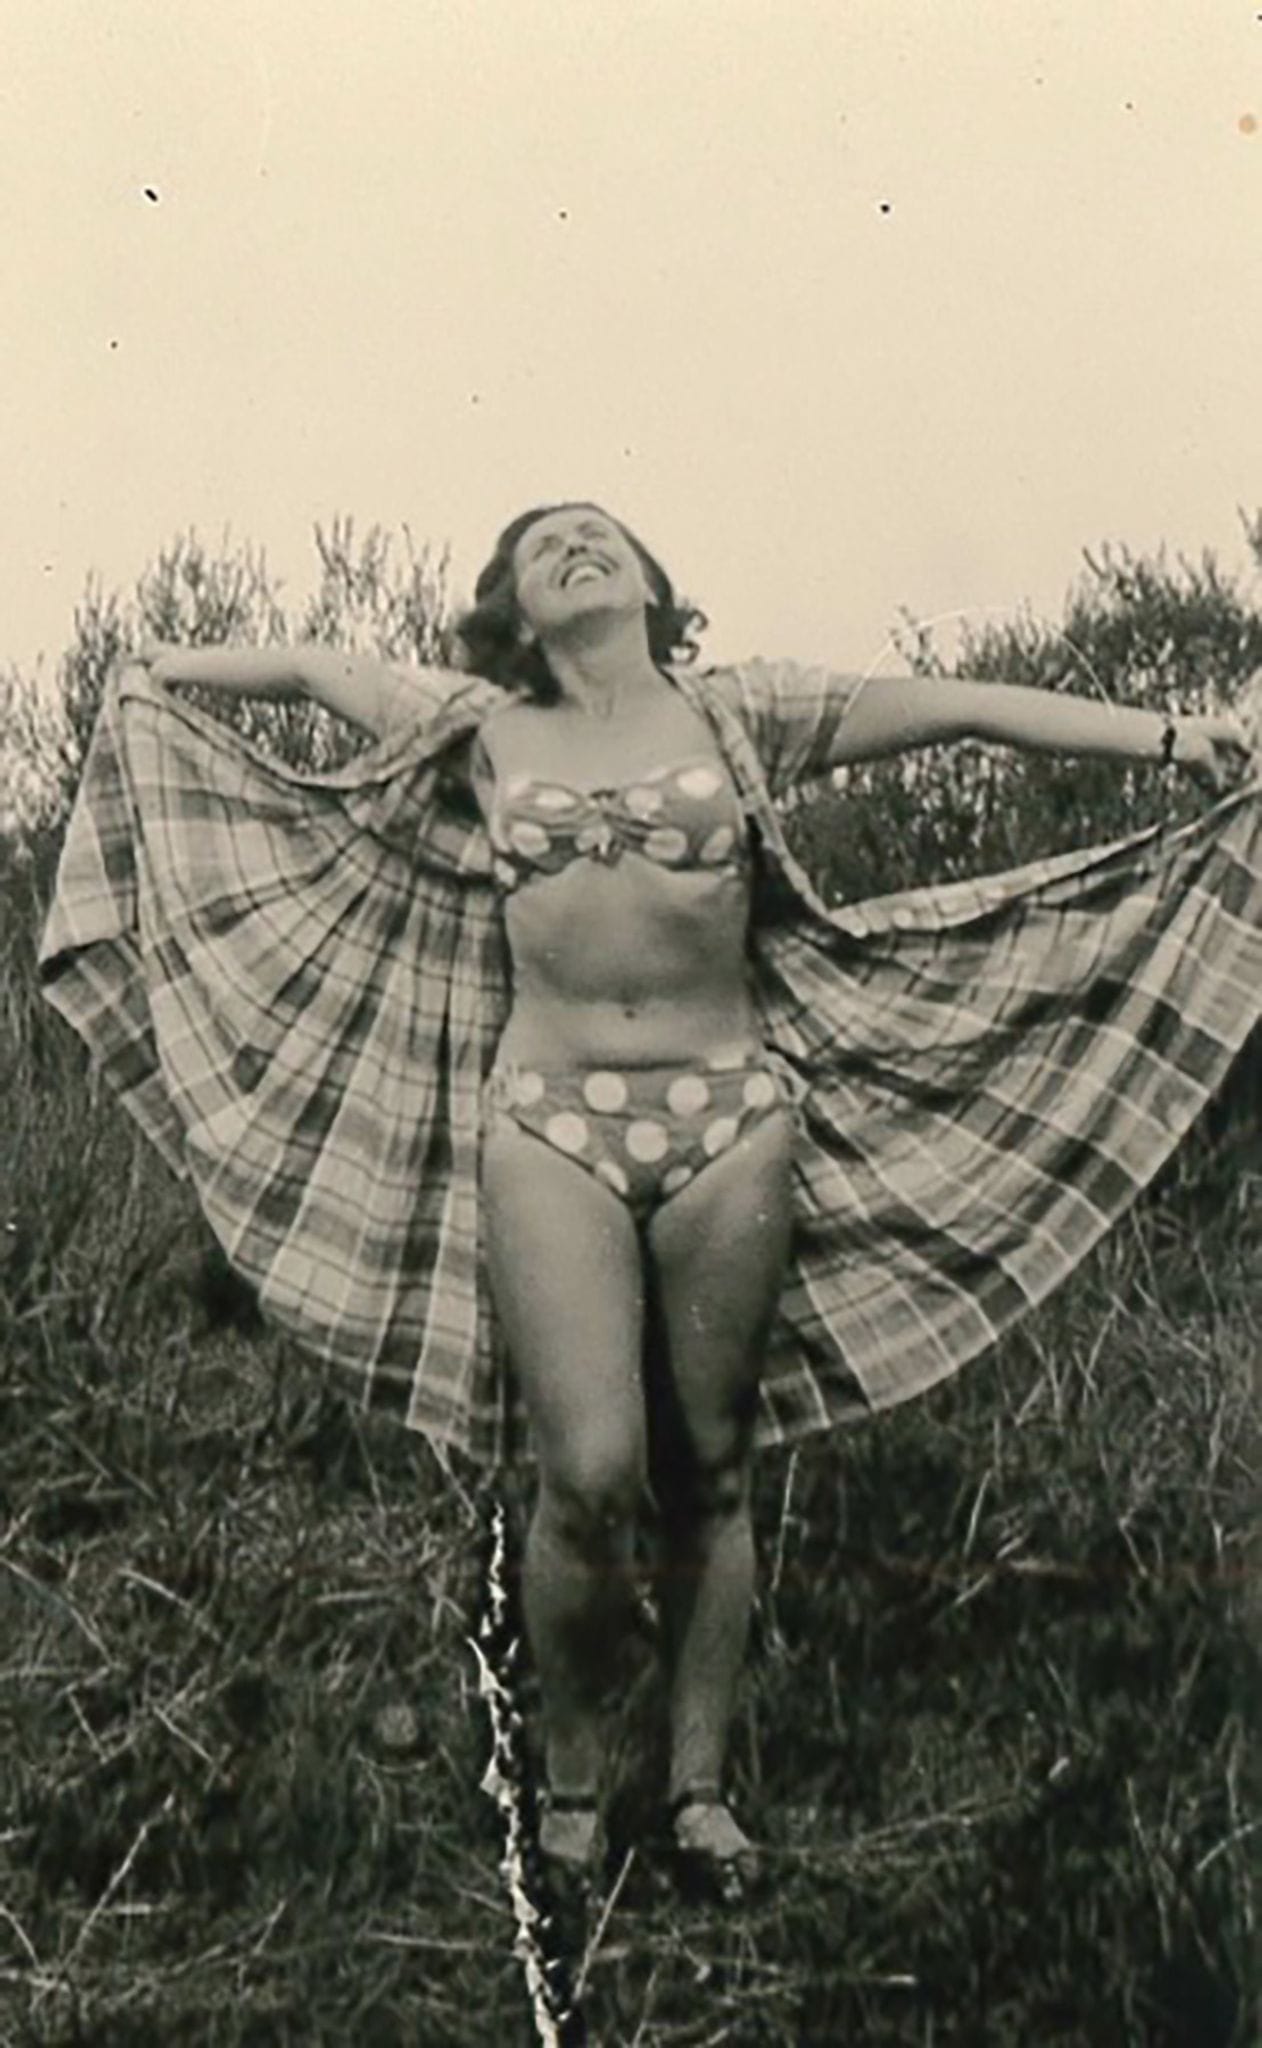 Sichtlich stolz auf ihr damaliges Trendoutfit: Die junge Ruth Megary im Bikini.